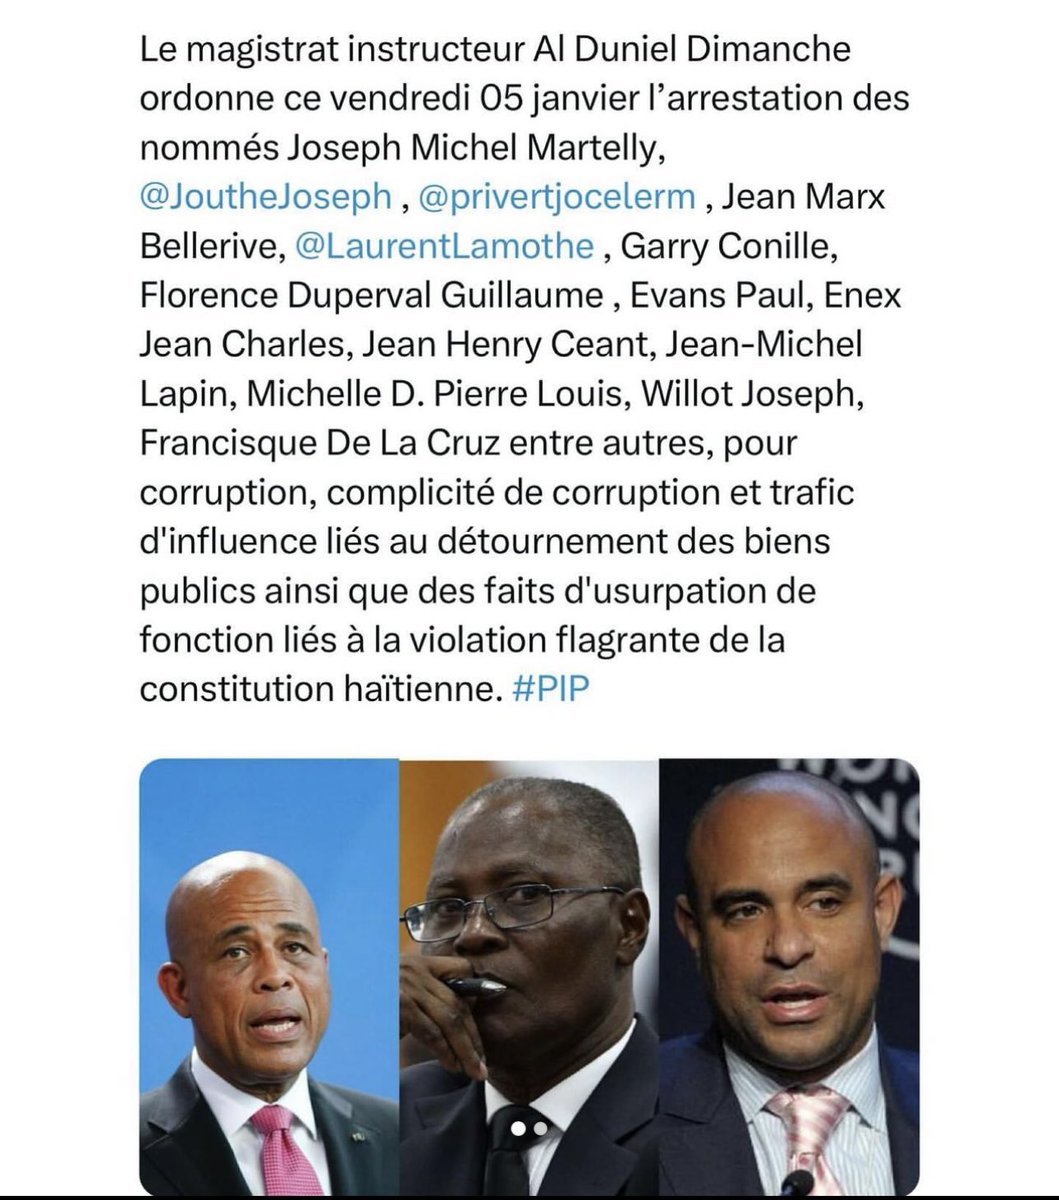 Le jour de gloire est arrivé, enfants de la république 🇭🇹 #Martely #LaurentLamothe #corruption  #detournementdefonds